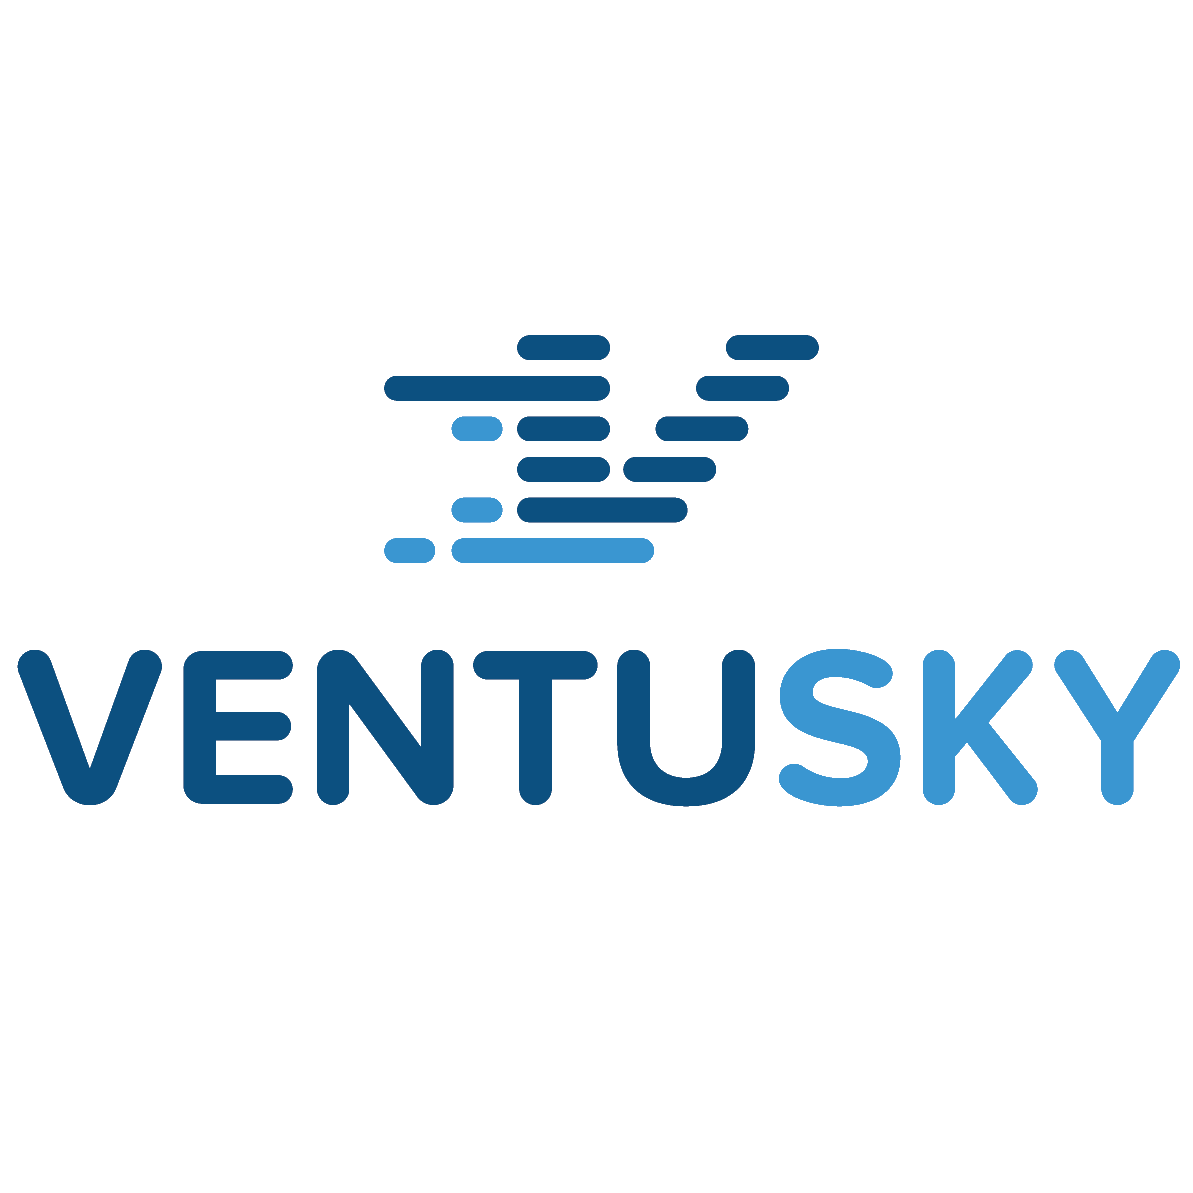 Ventusky